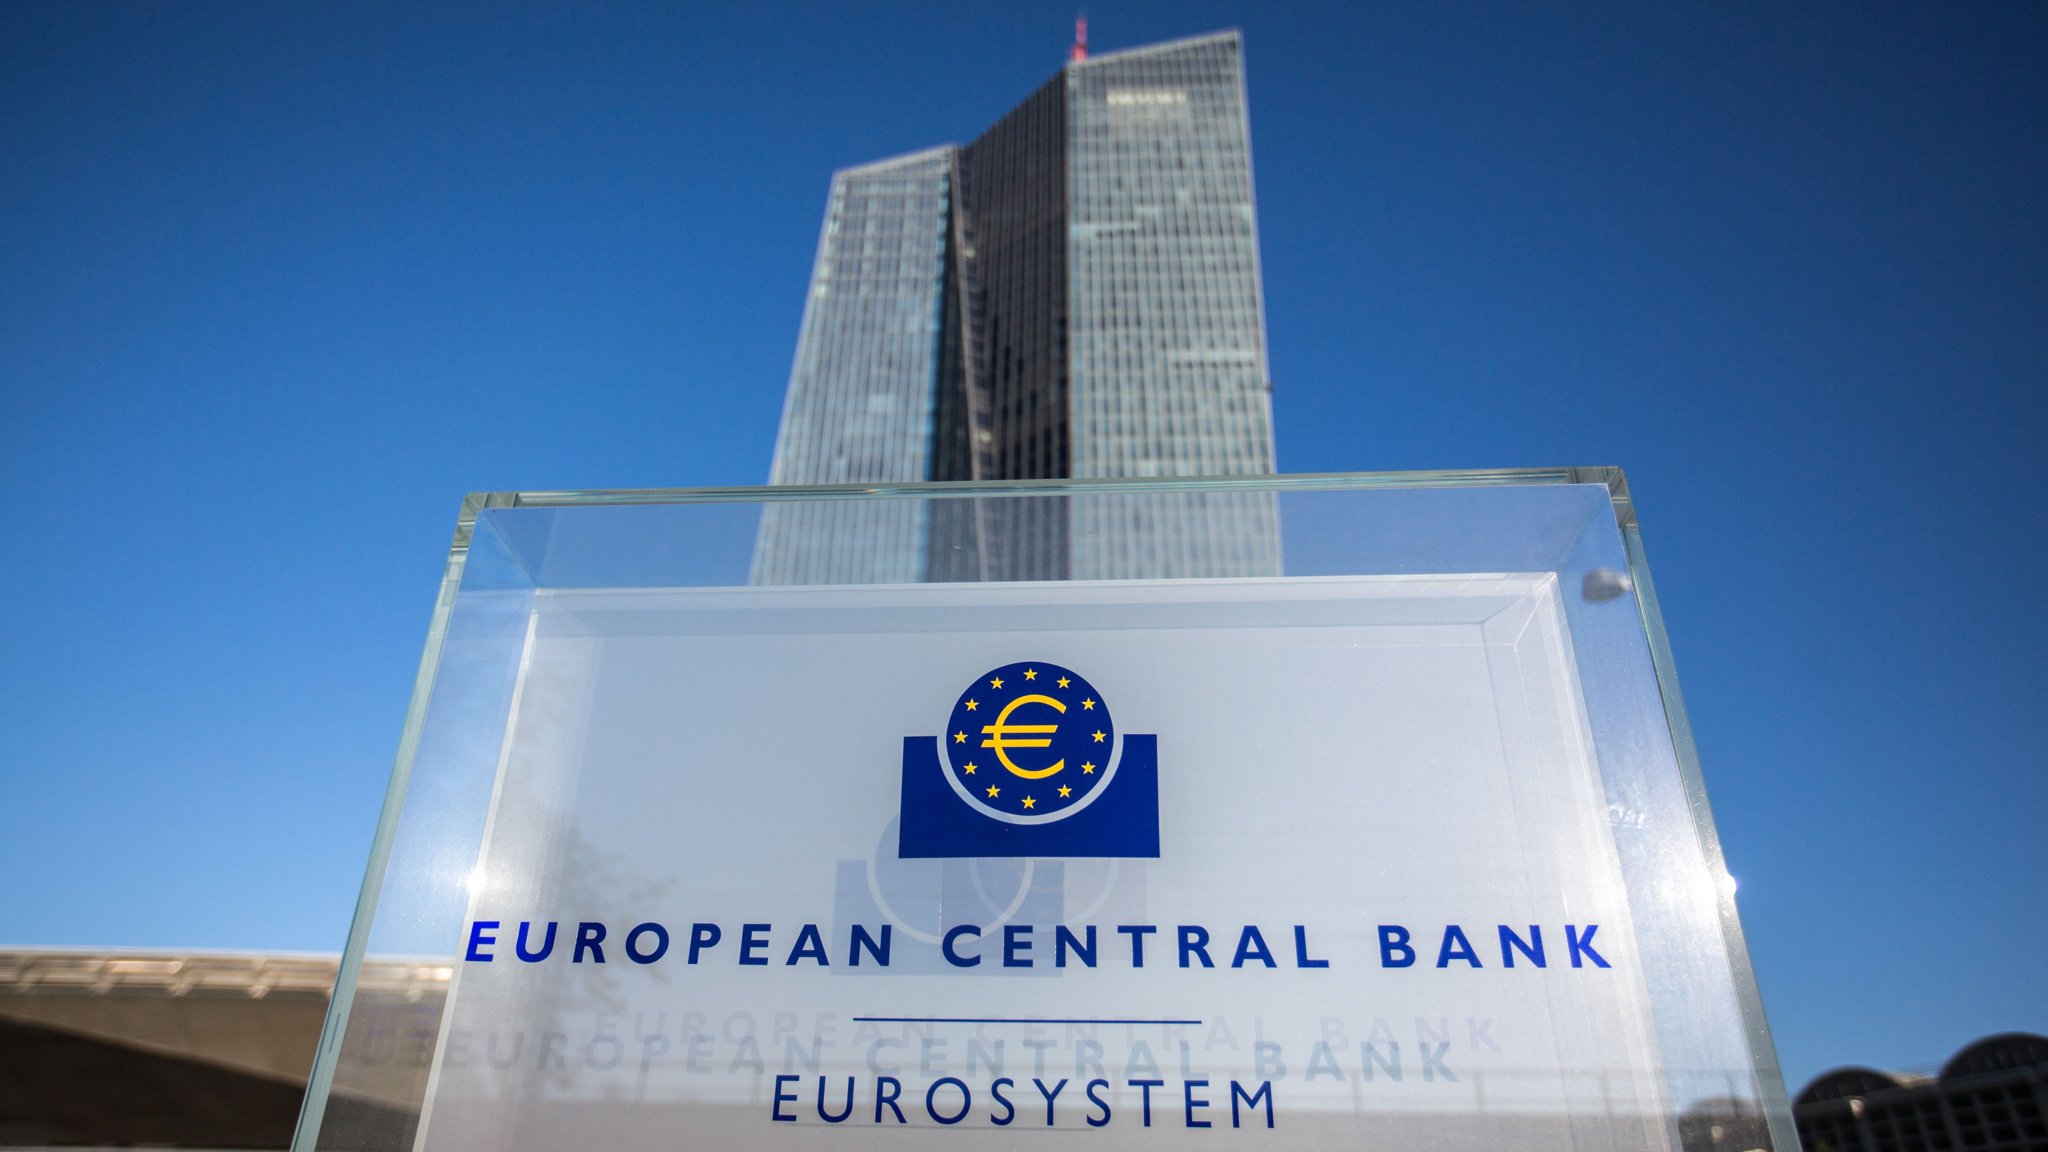 ΕΚΤ: Τέσσερις τράπεζες της Ε.Ε. που βρίσκονταν σε εποπτεία πέρασαν τα stress test